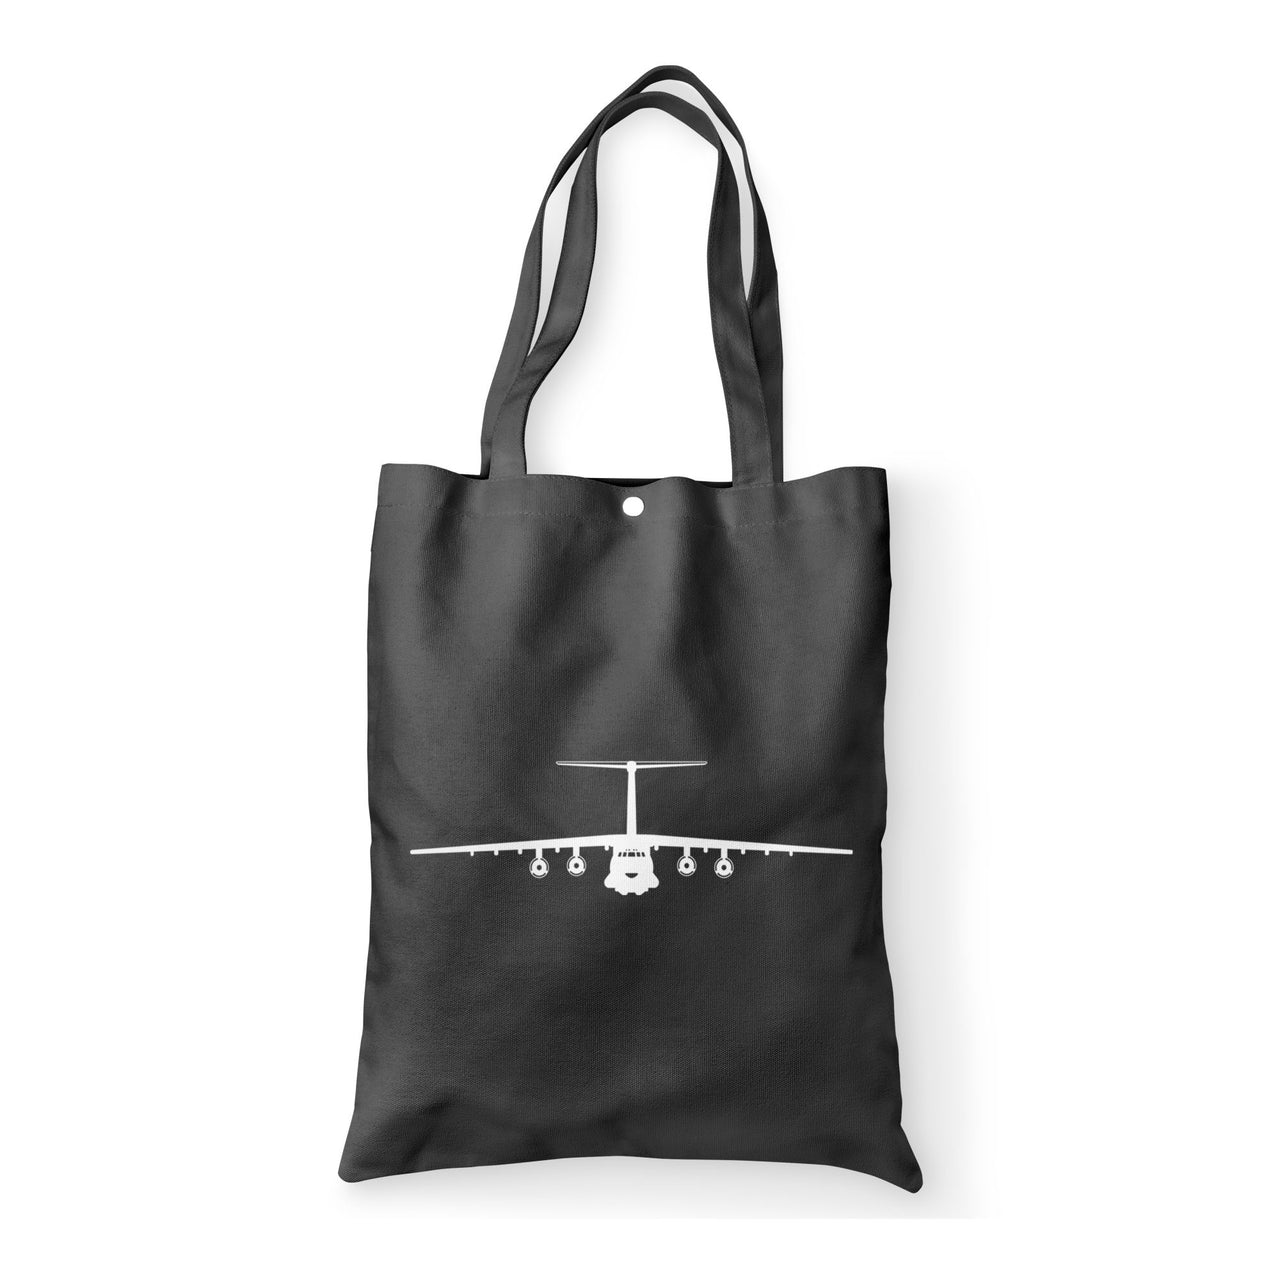 Ilyushin IL-76 Silhouette Designed Tote Bags